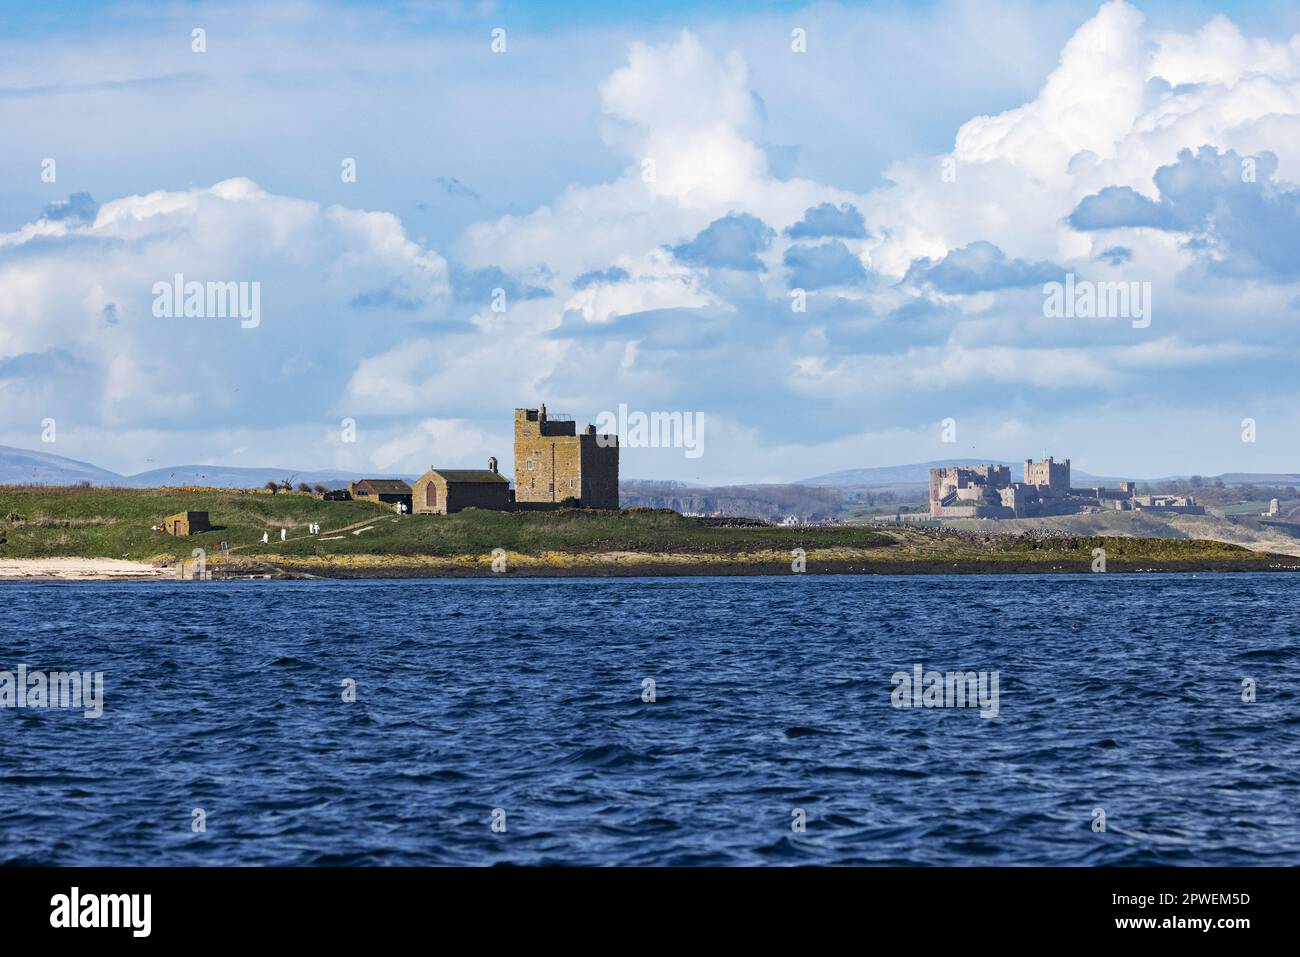 Paysage de Northumberland - vue depuis les îles Farne, passé devant la tour Castells, dans l'intérieur de Farne ; jusqu'au château de Bamburgh sur la côte, Northumberland Royaume-Uni Banque D'Images